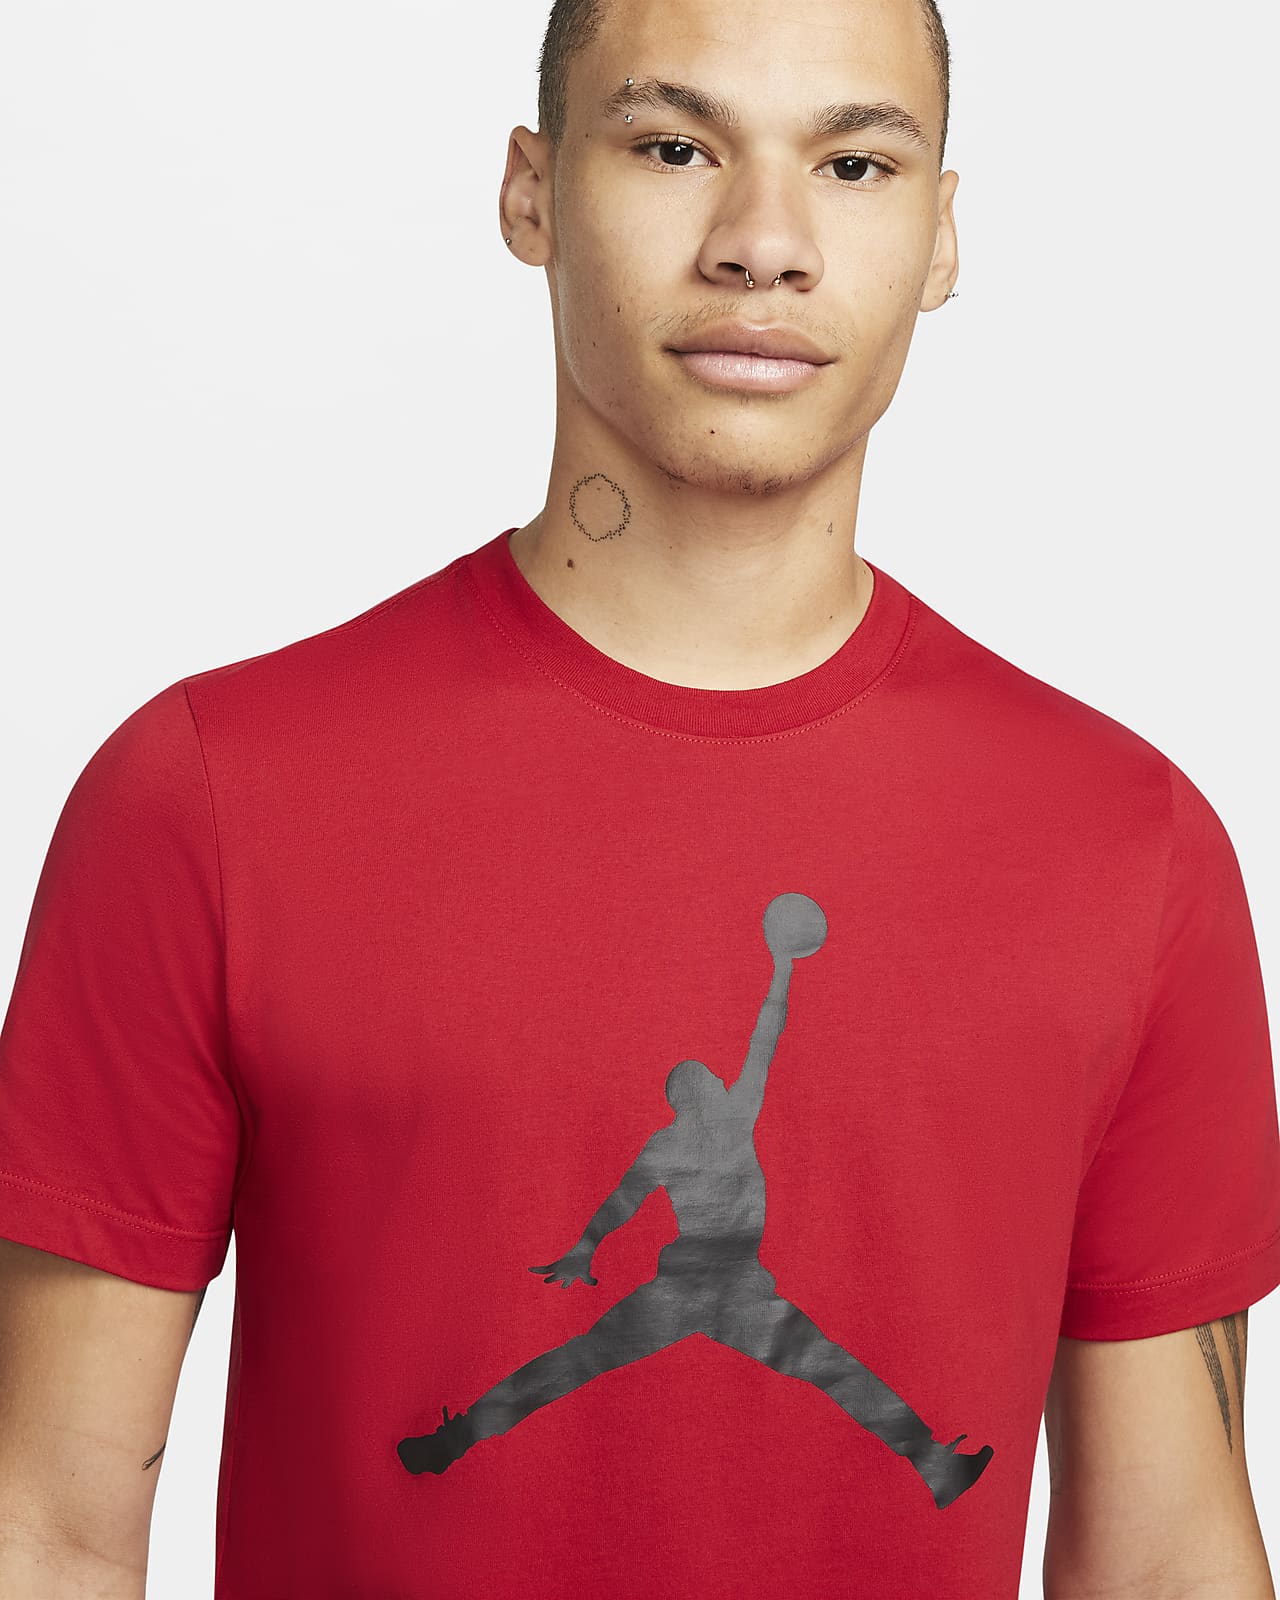 jumpman shirt